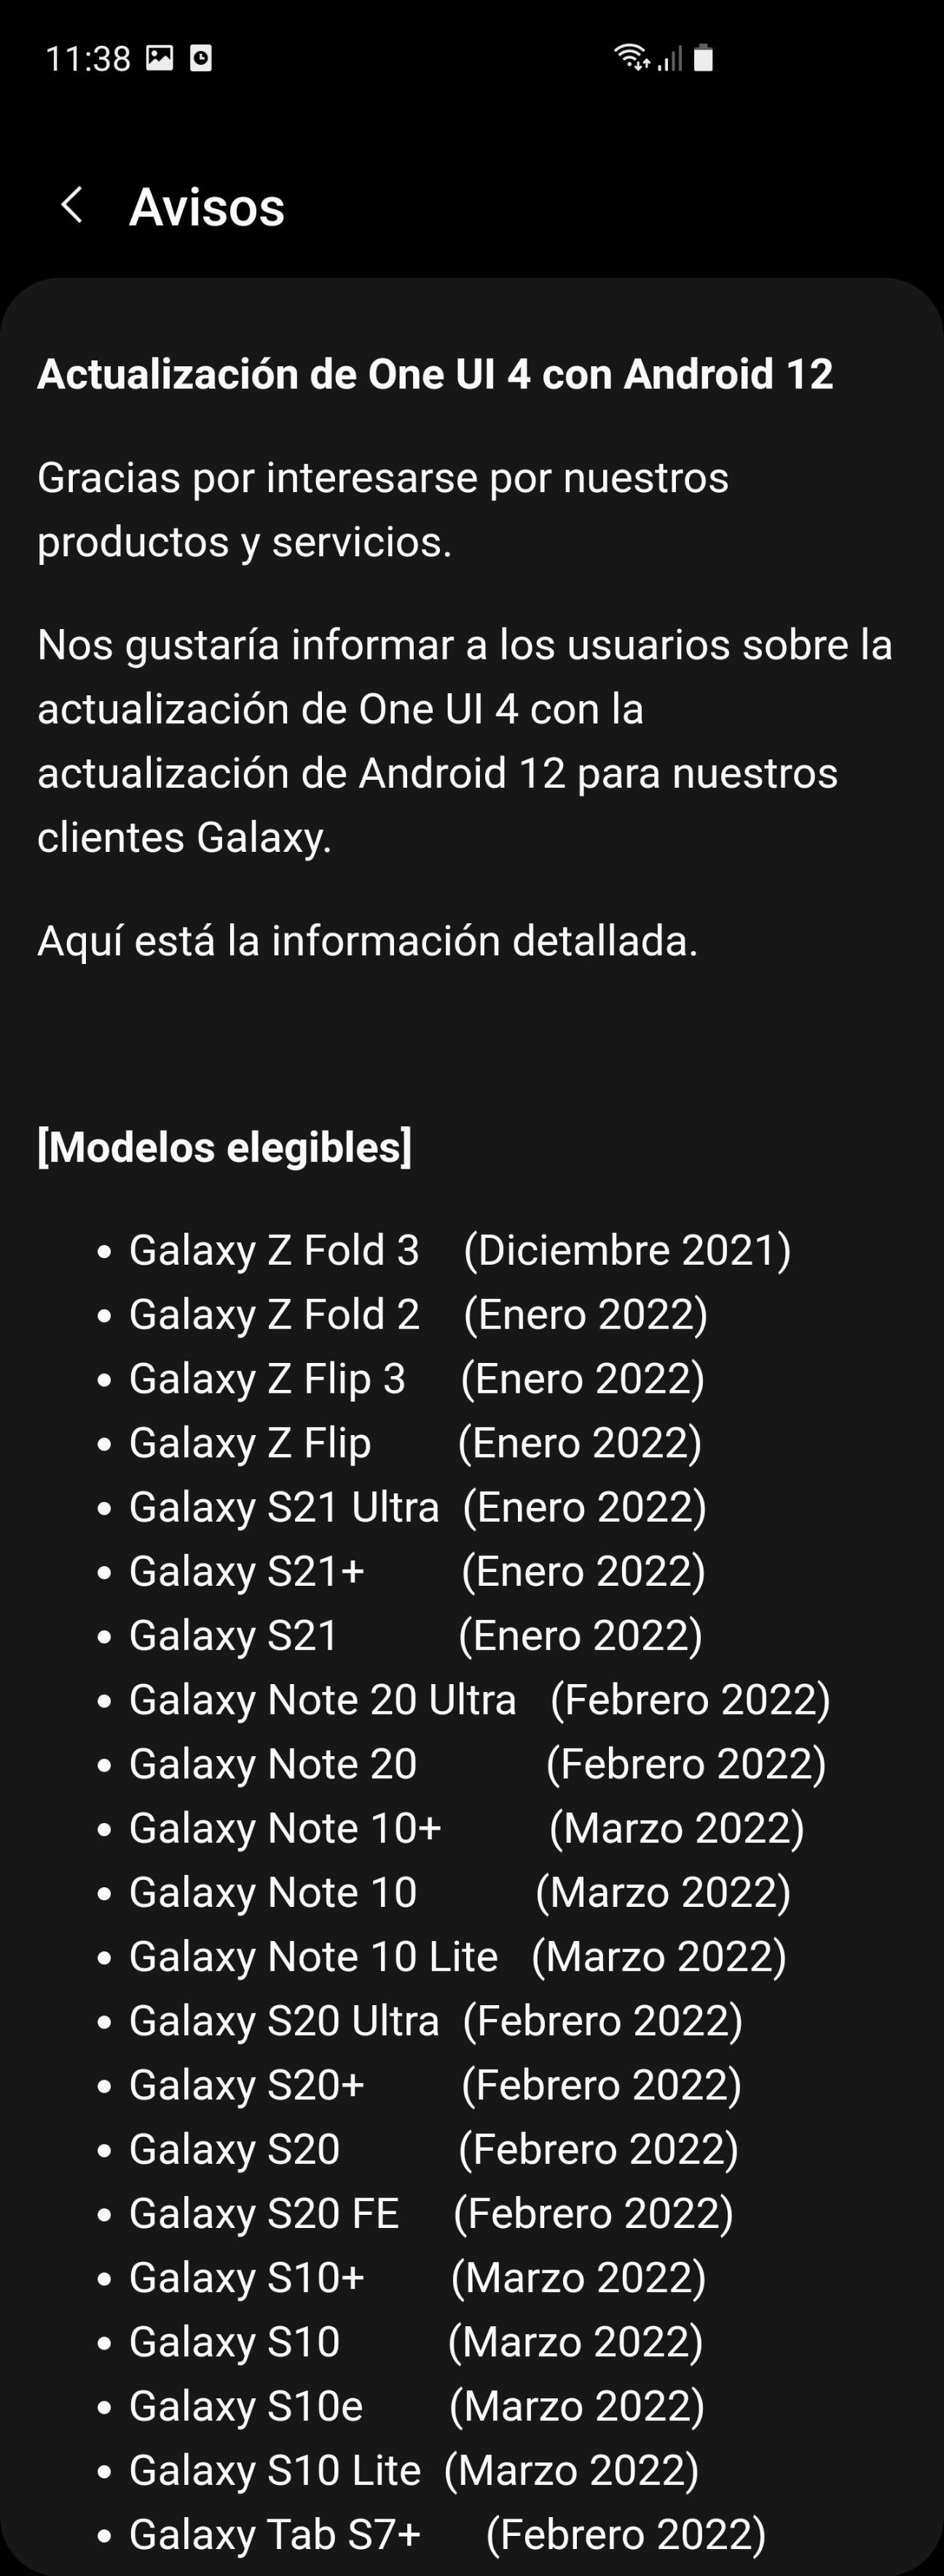 ANDROID 12 EN PERÚ? - Samsung Members